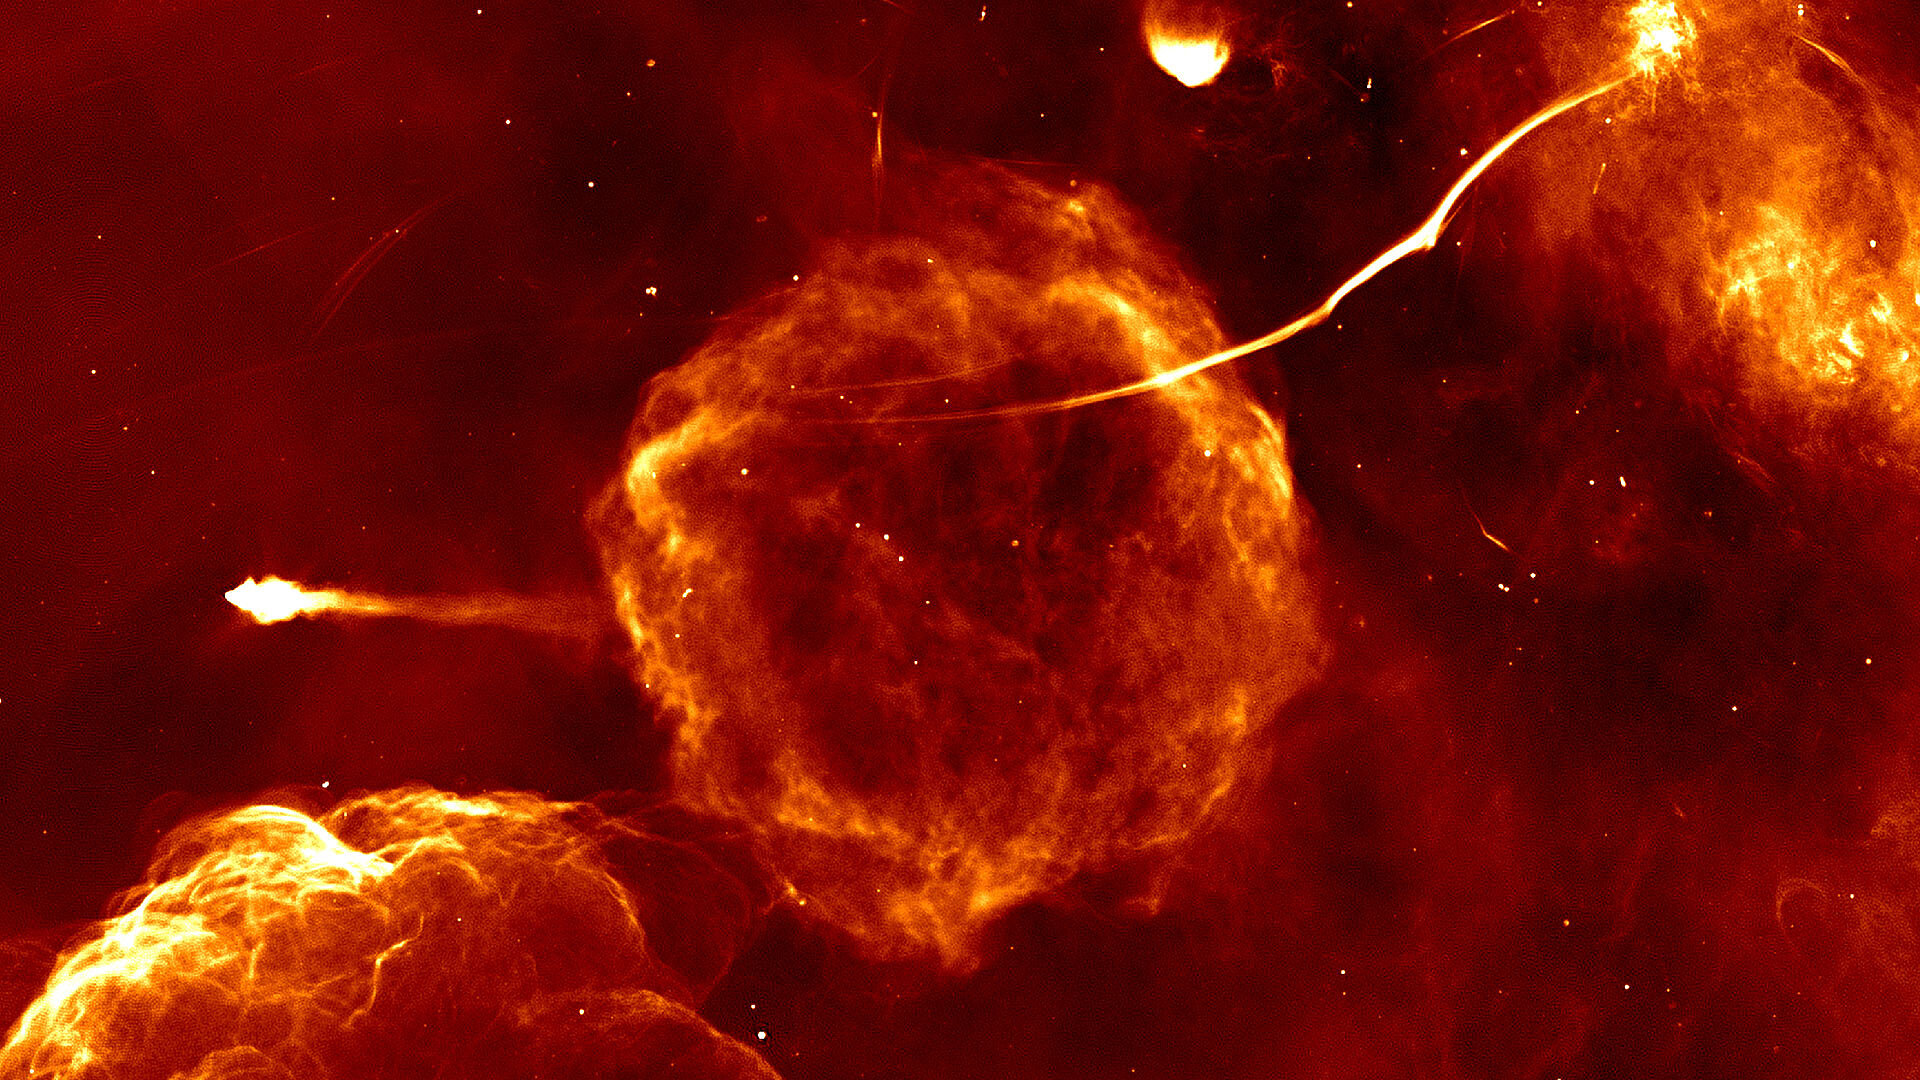 <p>Известный ученым остаток сверхновой звезды под названием&nbsp;G359.1-0.5. Светящийся объект слева &mdash; &laquo;Мышь&raquo;, пульсар (вращающаяся нейтронная звезда), сформированный, предположительно, во время образования сверхновой. Длинный светящийся объект сверху справа &mdash; &laquo;Змея&raquo;, известный ученым радиофиламент.</p>